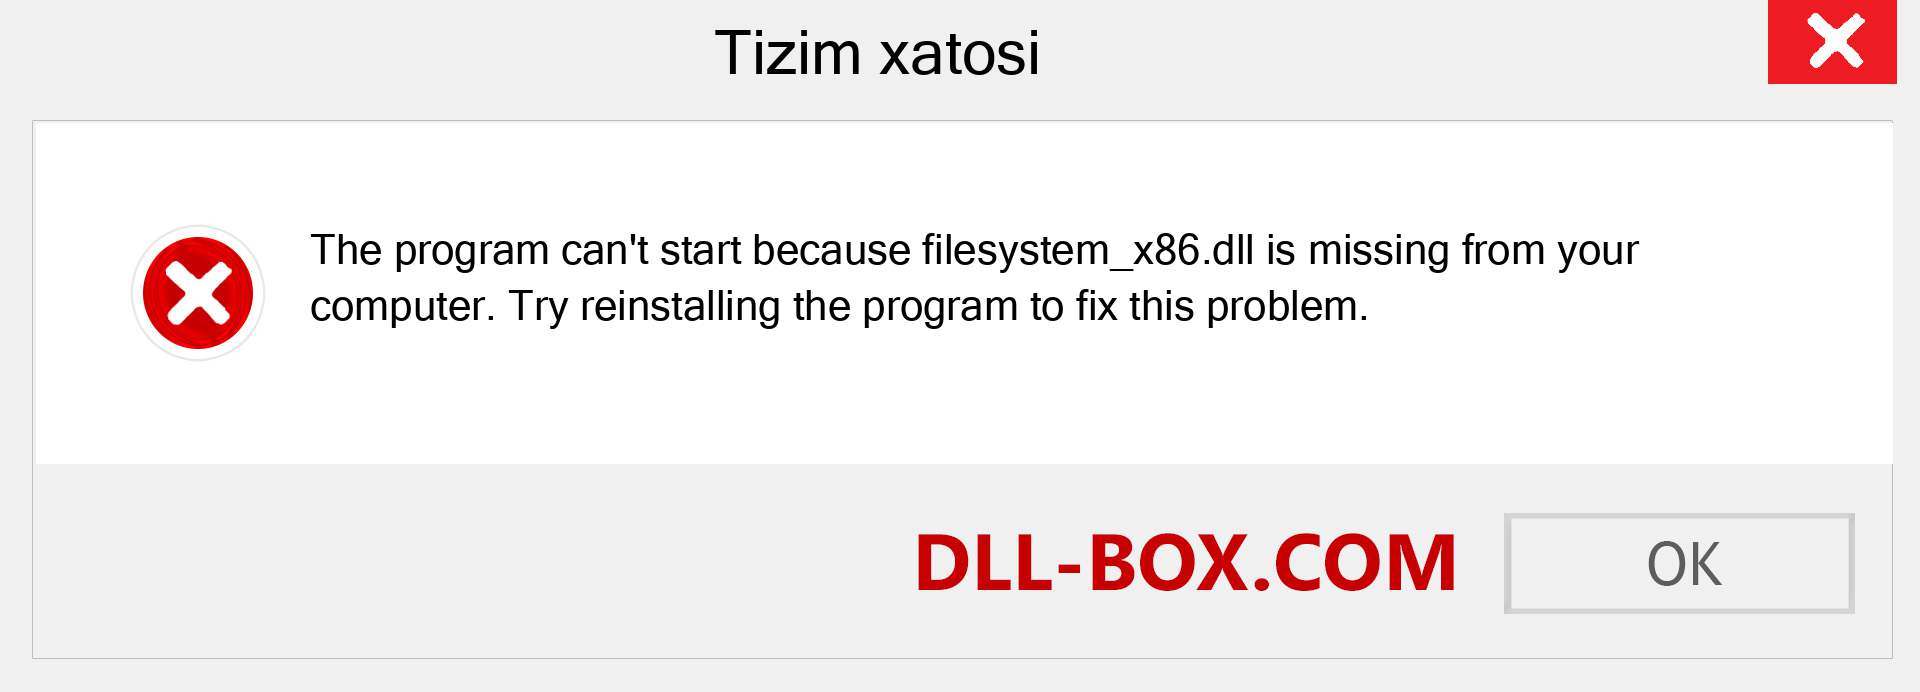 filesystem_x86.dll fayli yo'qolganmi?. Windows 7, 8, 10 uchun yuklab olish - Windowsda filesystem_x86 dll etishmayotgan xatoni tuzating, rasmlar, rasmlar